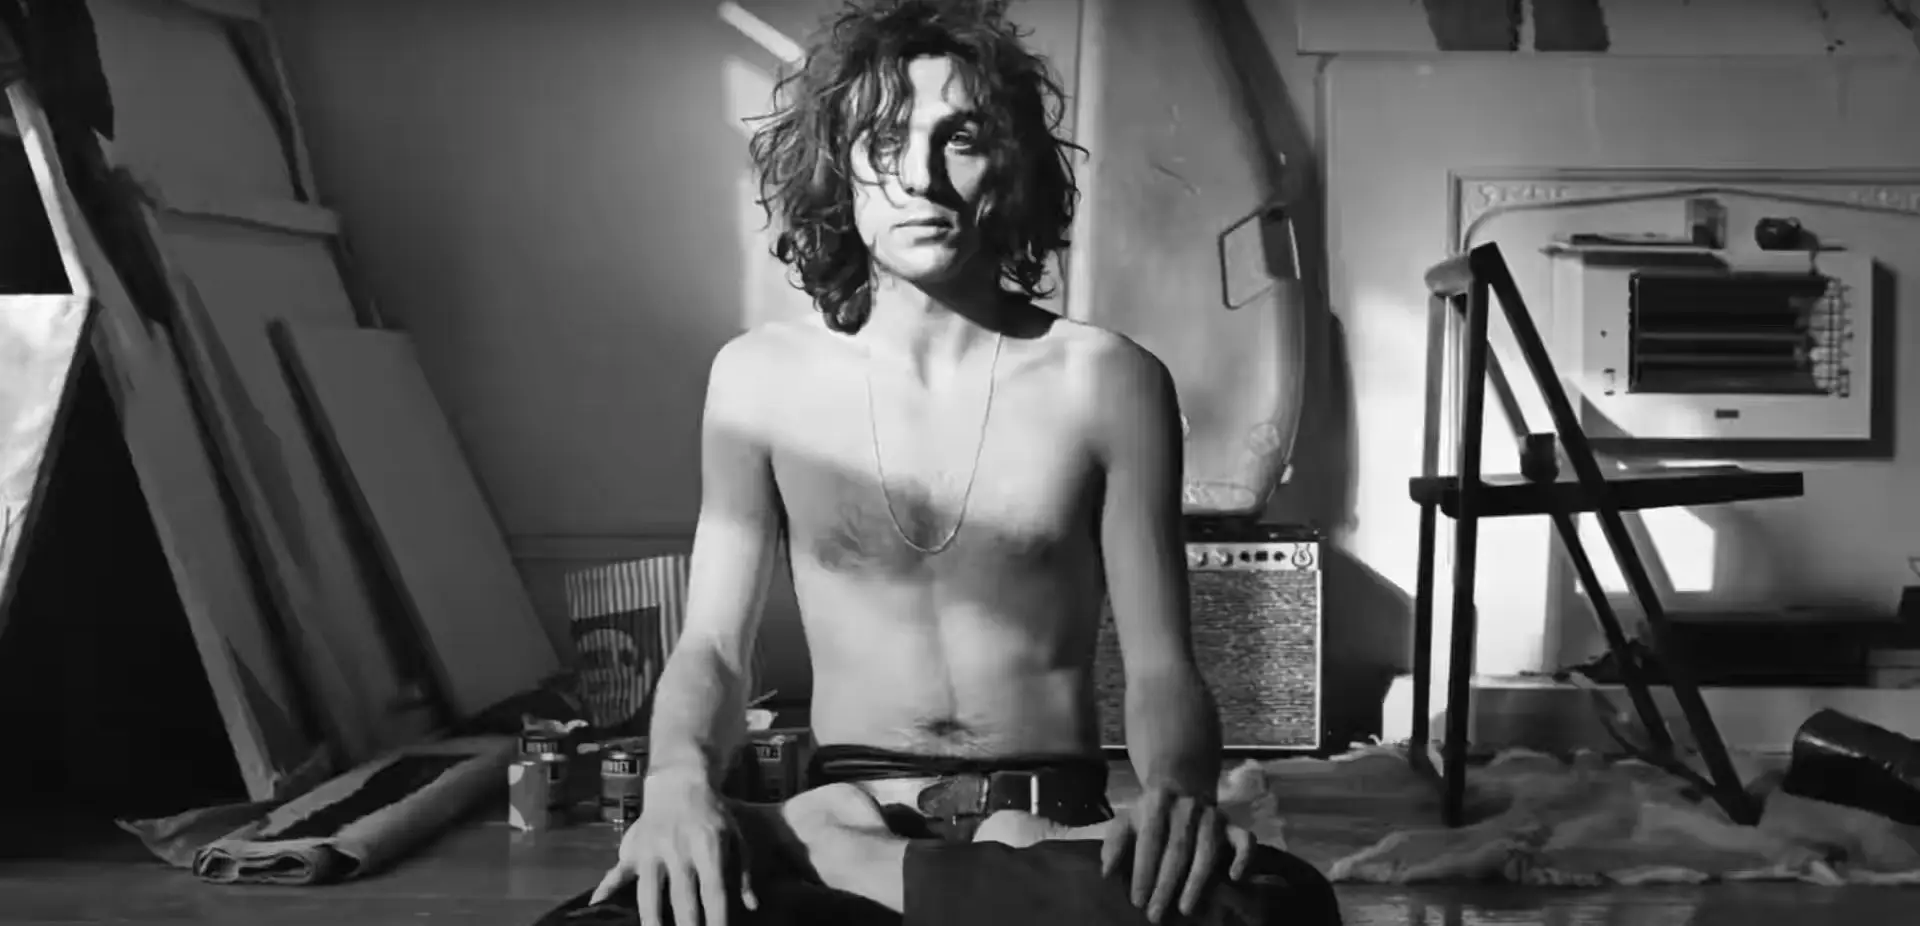 Um novo documentário sobre Syd Barrett, cofundador dos Pink Floyd, está a caminho e o trailer já chegou